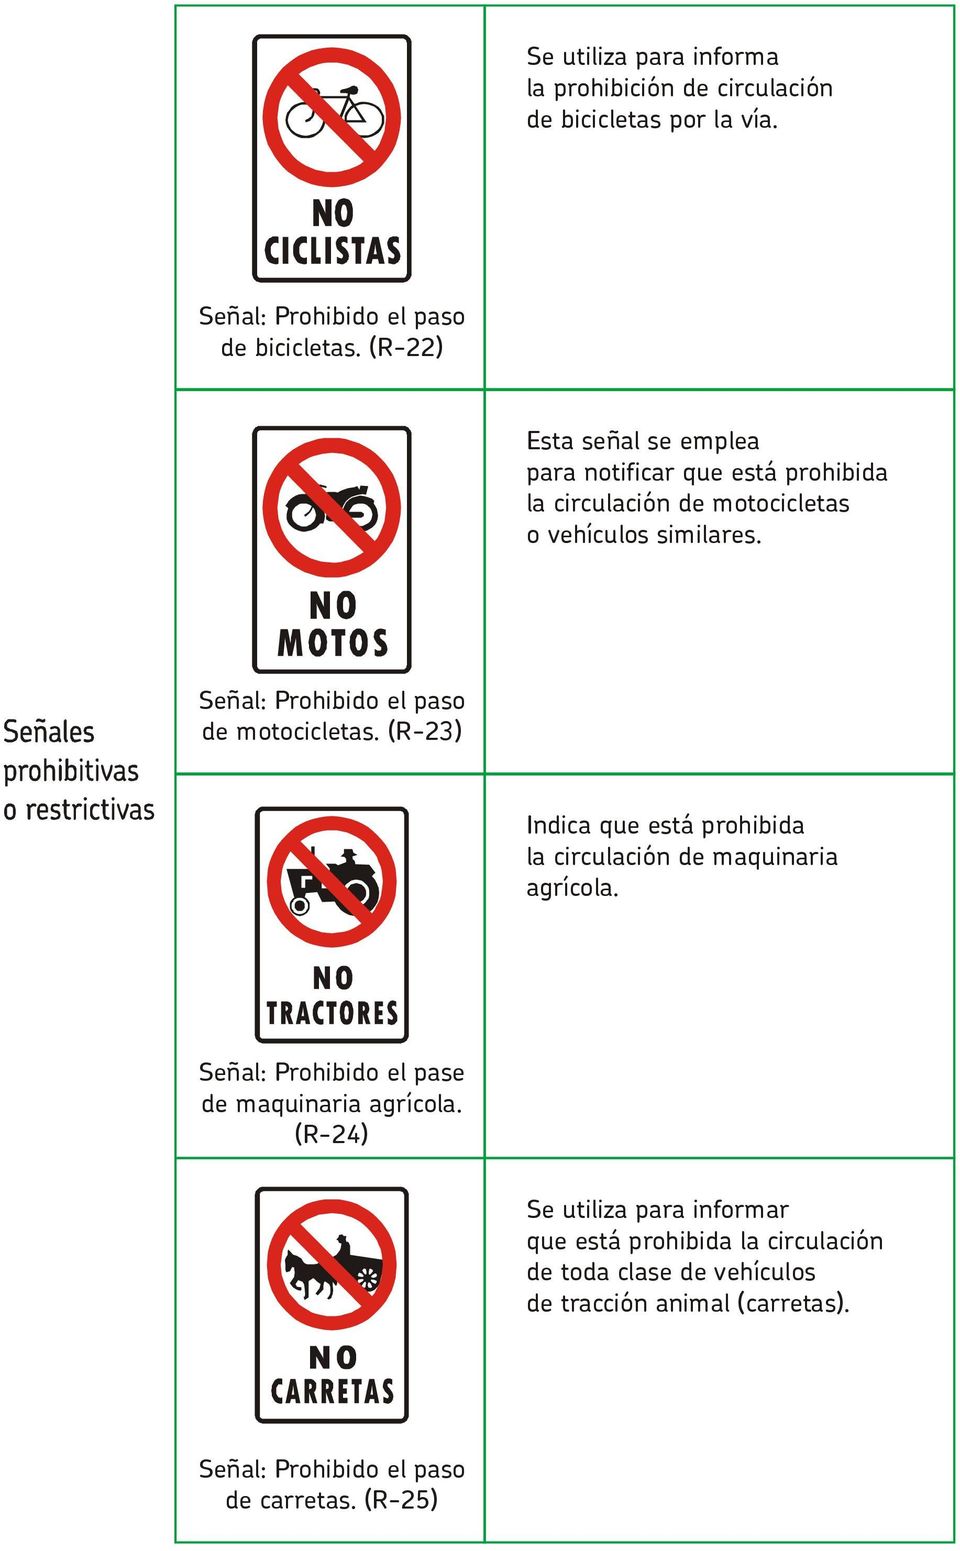 Señal: Prohibido el paso de motocicletas. (R-23) Indica que está prohibida la circulación de maquinaria agrícola.